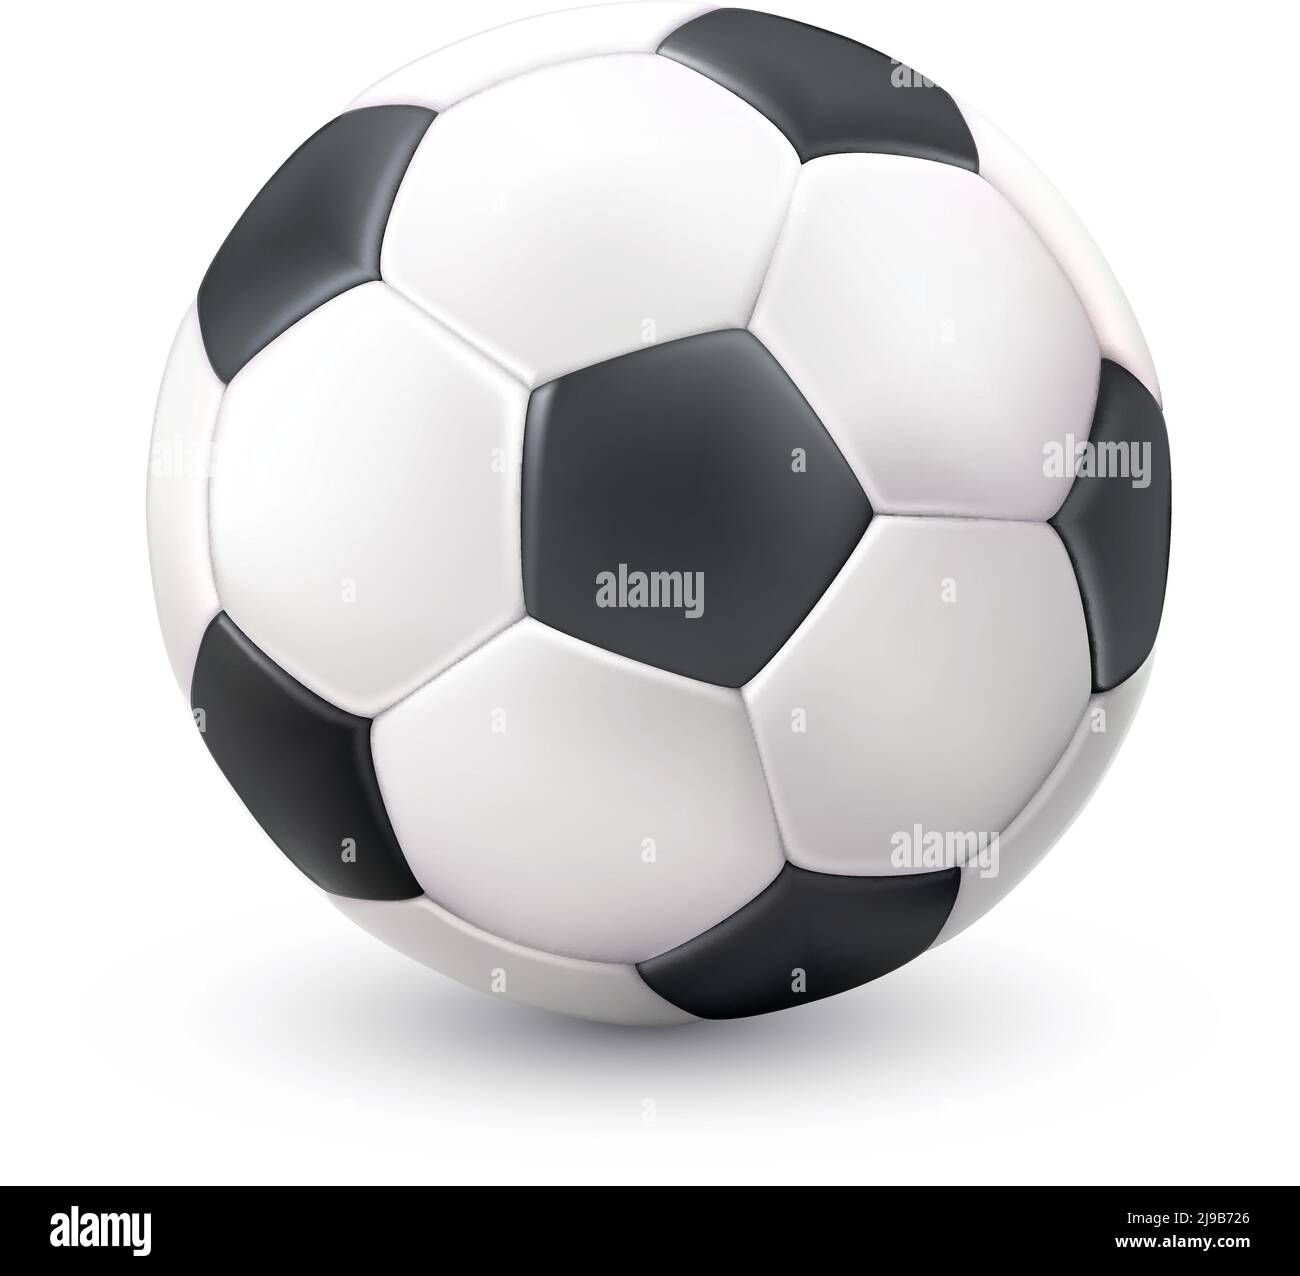 Realista fútbol clásico pelota de fútbol blanco negro imagen con luz ilustración de vector de objeto único del pictograma de reflexión de sombra Ilustración del Vector